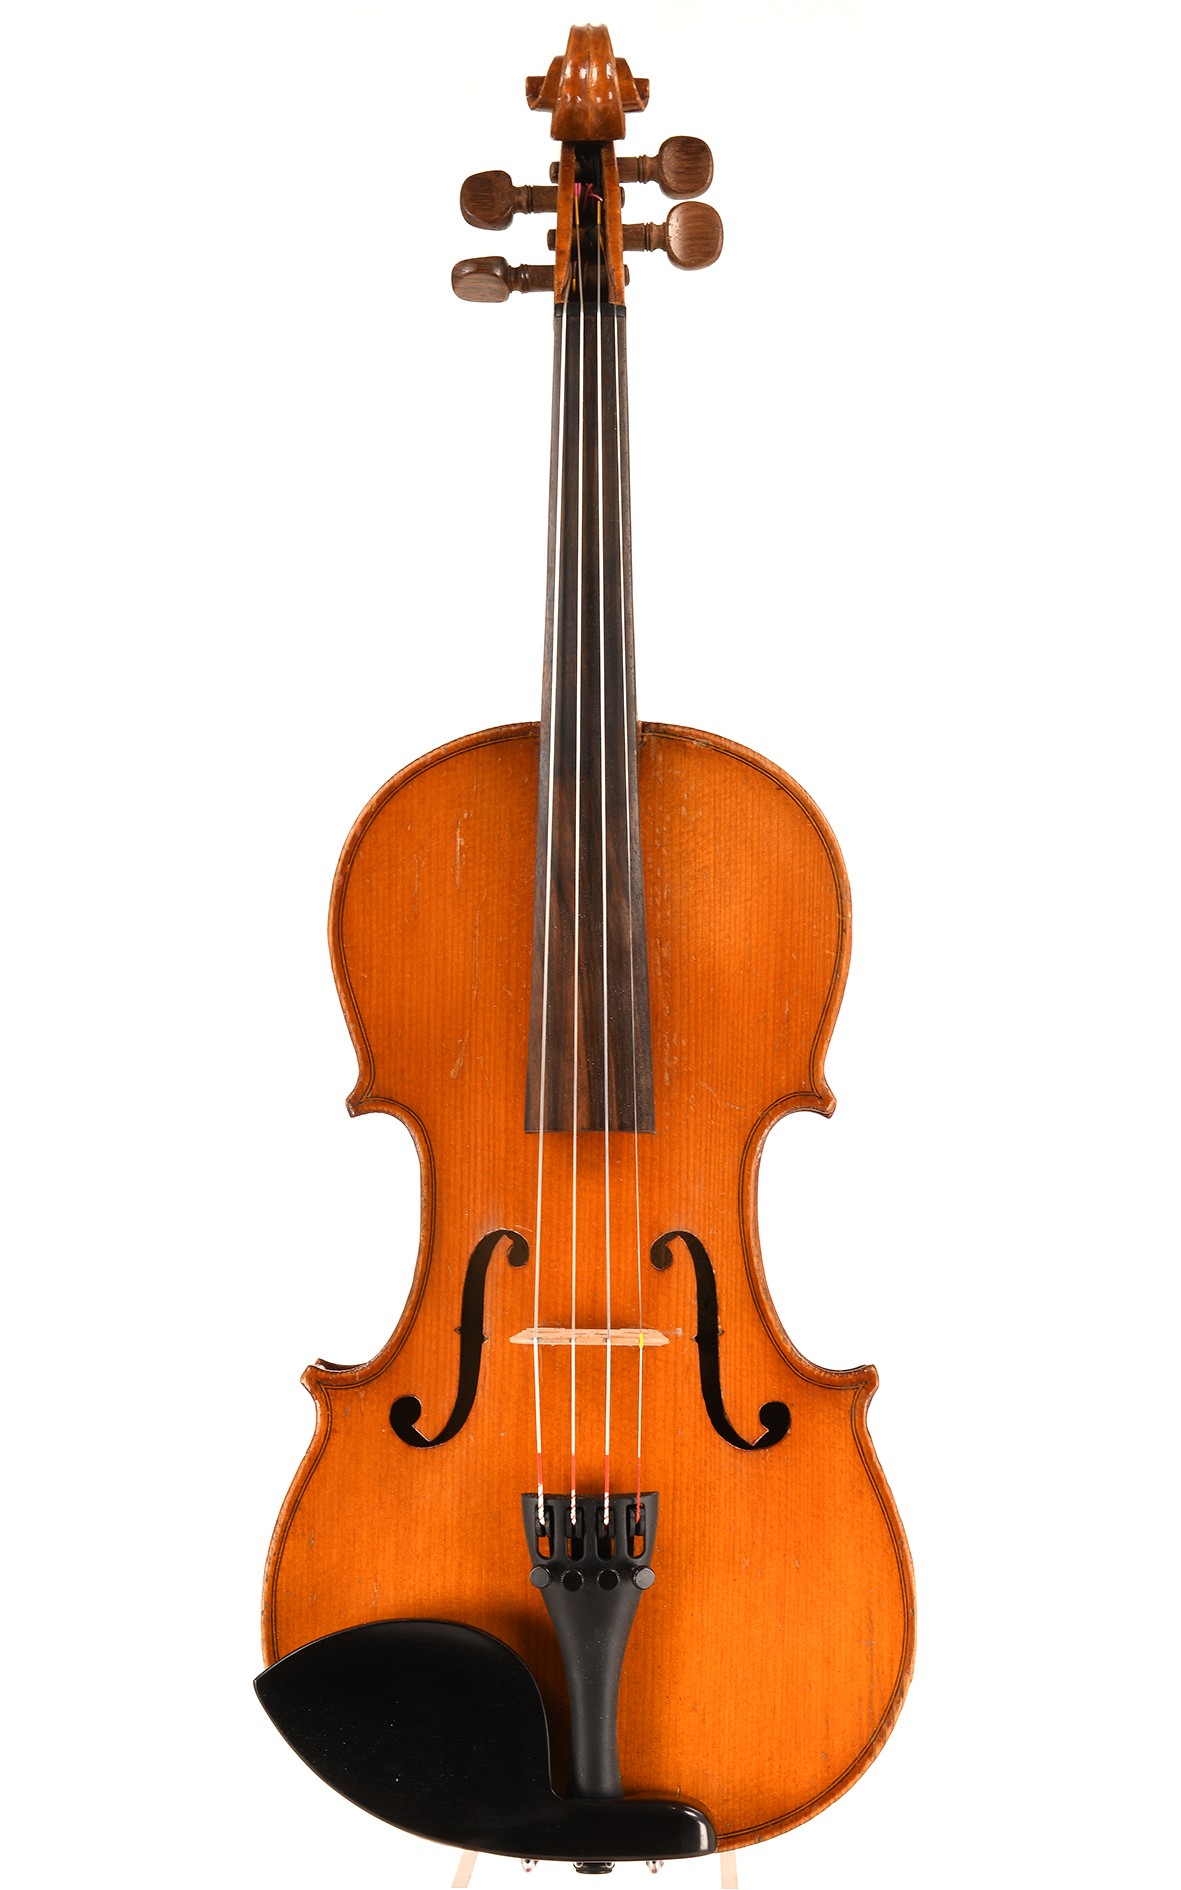 JTL Mansury 3/4 violin